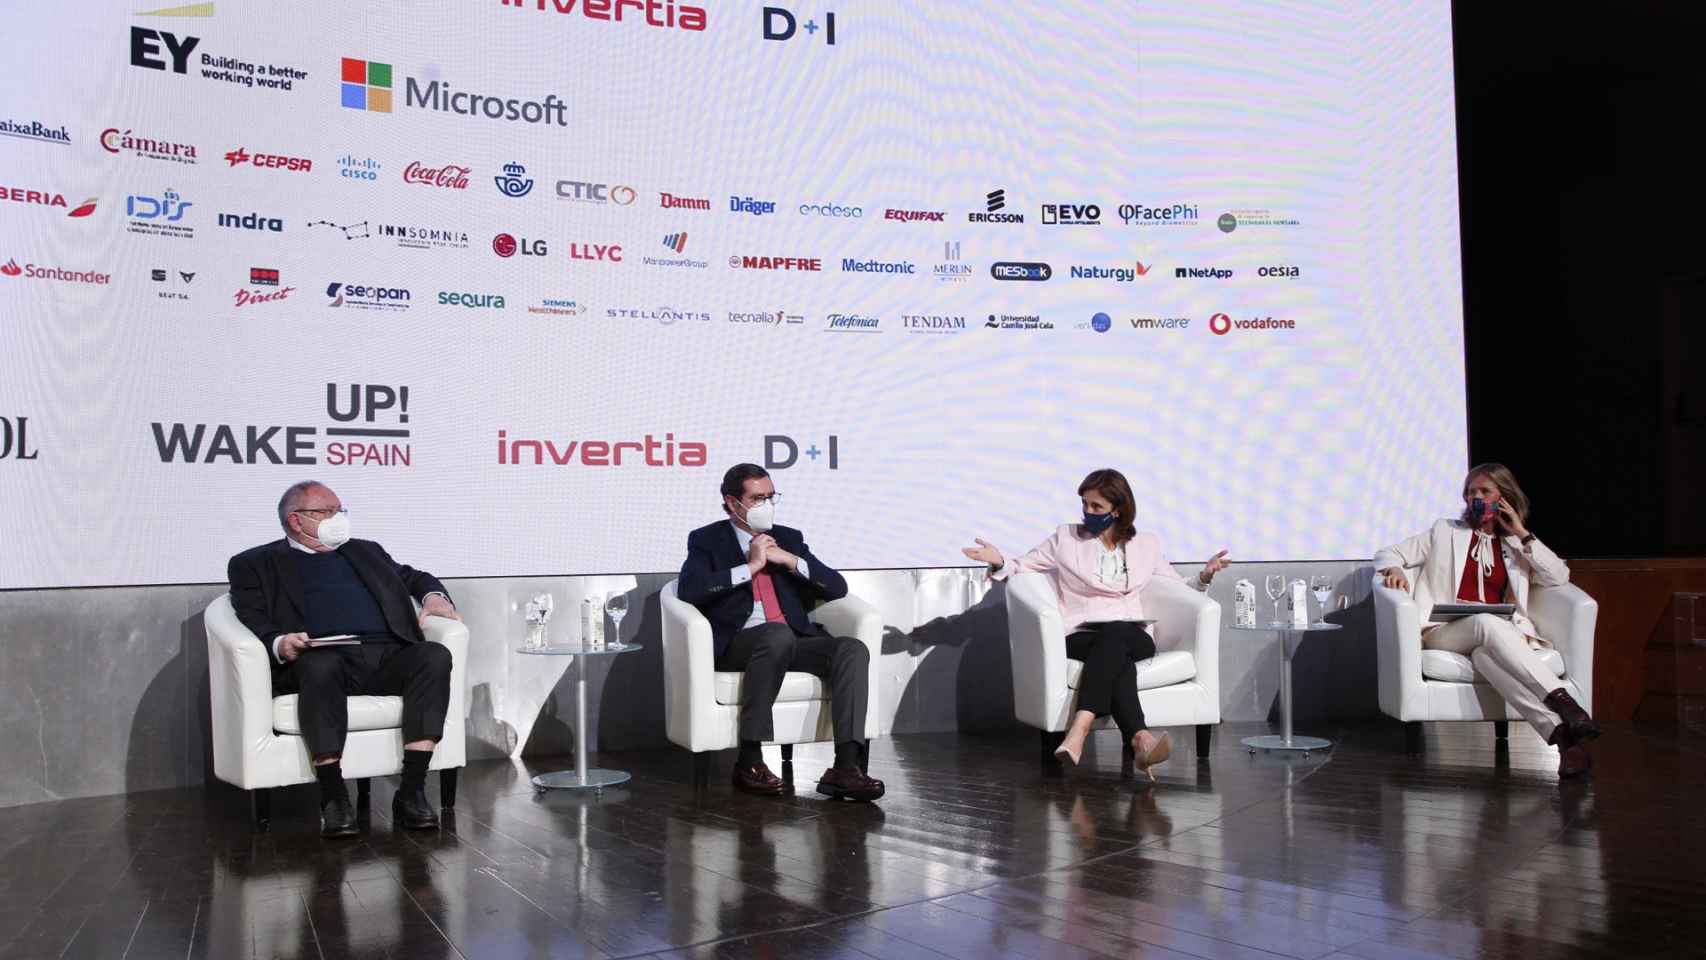 El presidente de la CEOE, Antonio Garamendi, junto con el presidente de la Cámara de Comercio de España, José Luis Bonet, (izquierda) y la presidenta de Microsoft, Pilar López, y la presidenta de la Fundación Cotec, Cristina Garmendia.